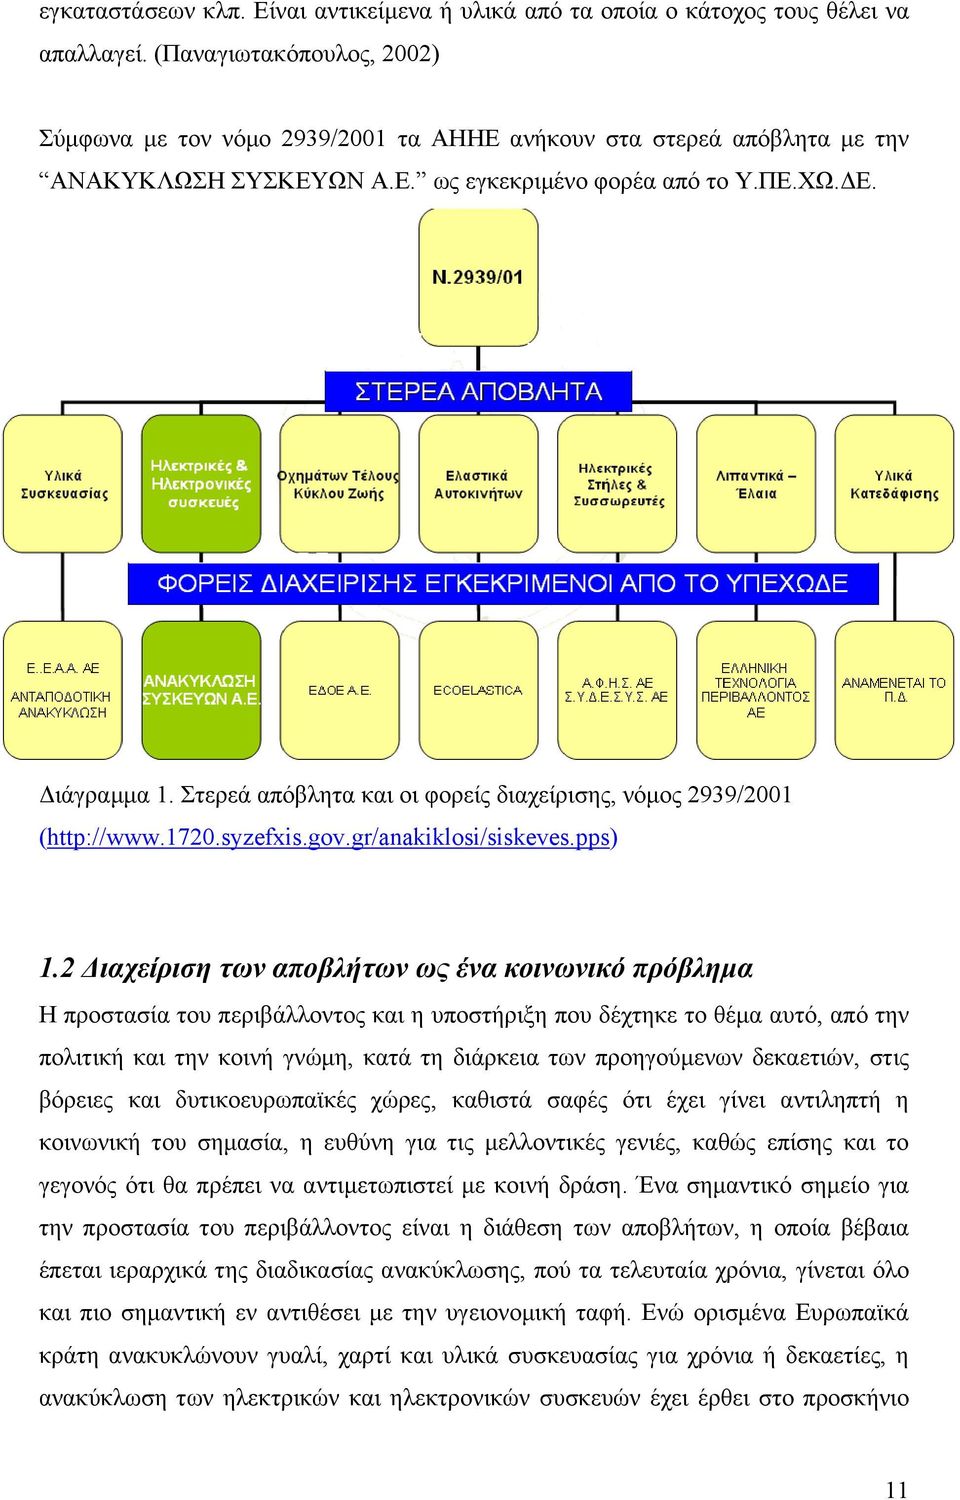 Στερεά απόβλητα και οι φορείς διαχείρισης, νόμος 2939/2001 (http://www.1720.syzefxis.gov.gr/anakiklosi/siskeves.pps) 1.